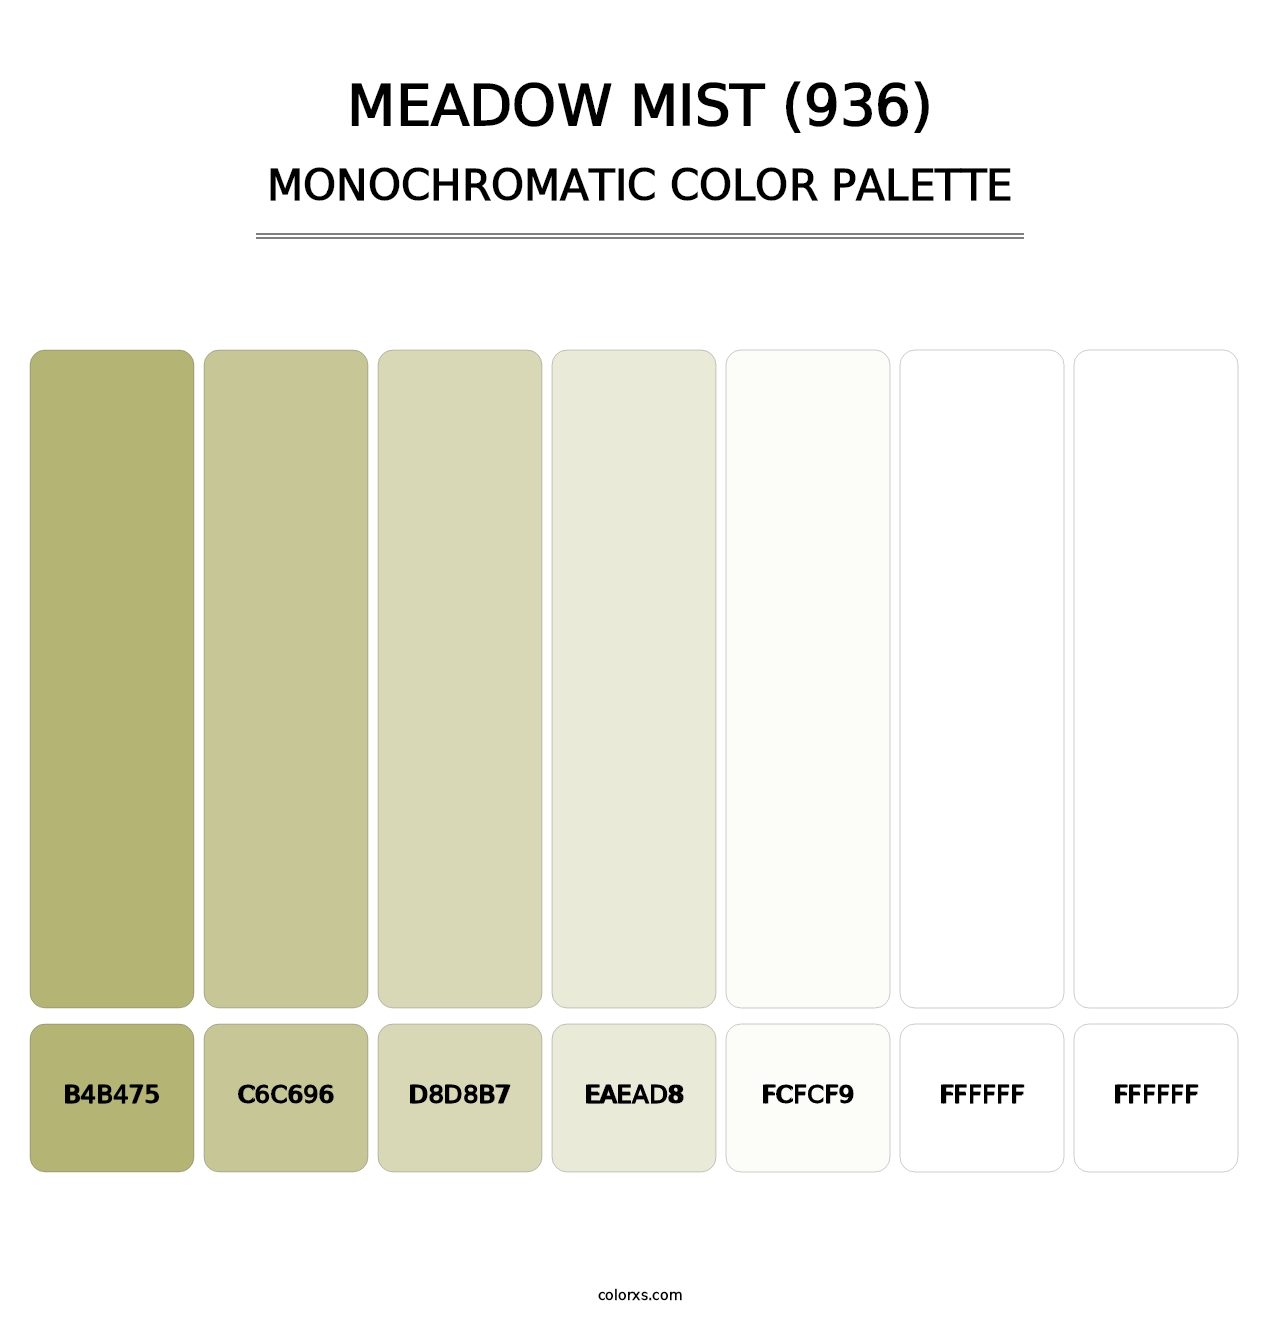 Meadow Mist (936) - Monochromatic Color Palette